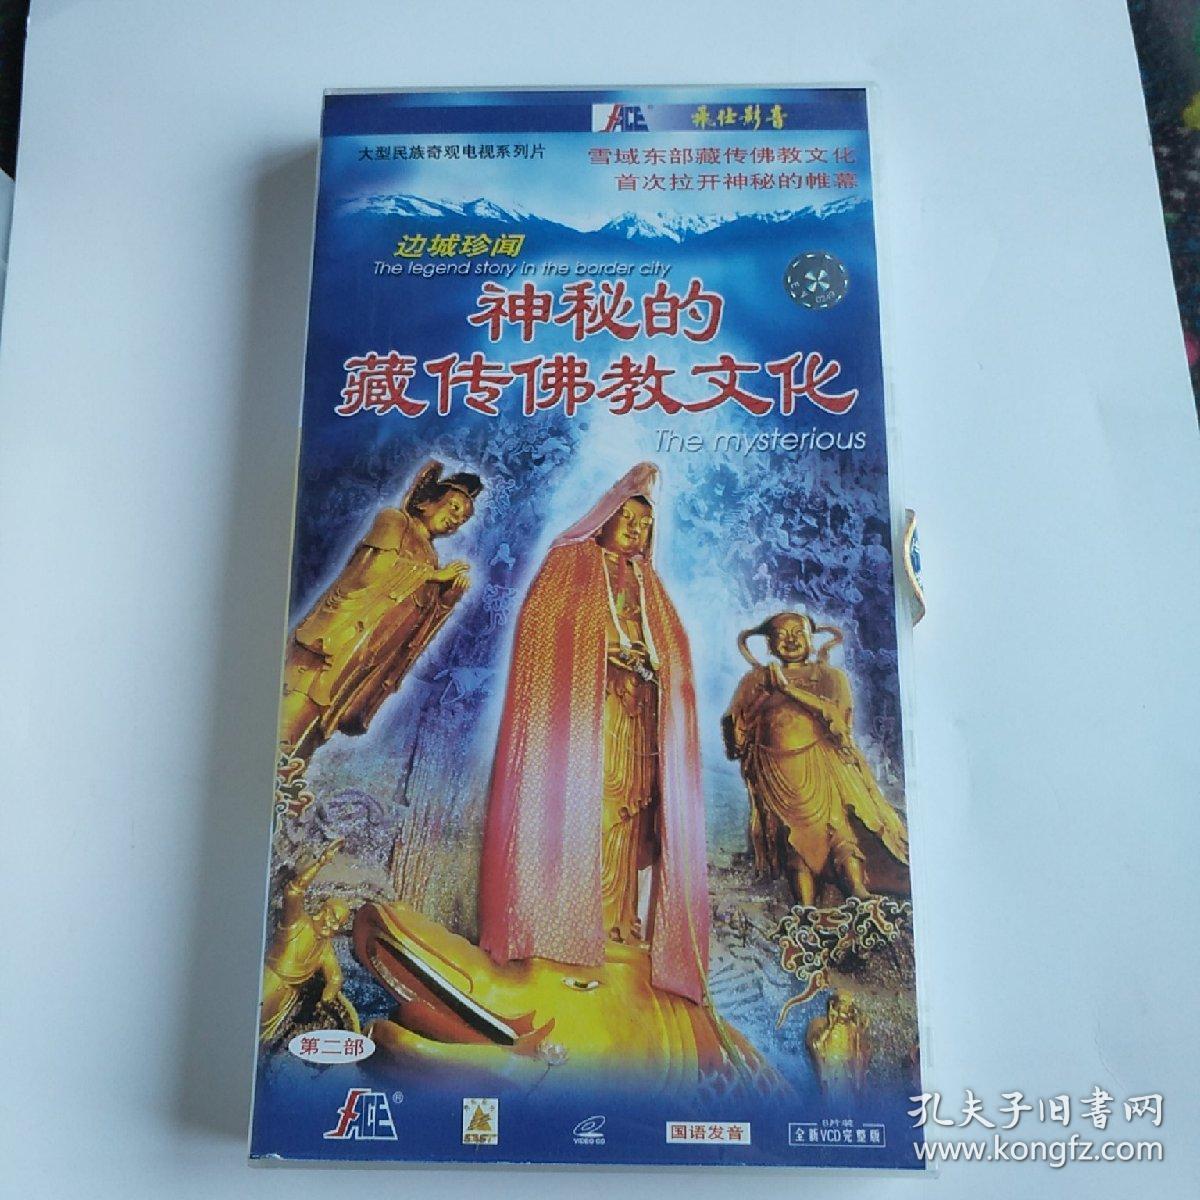 大型民族奇观电视剧系列片神秘的藏传佛教文化第二部 VCD 八谍装